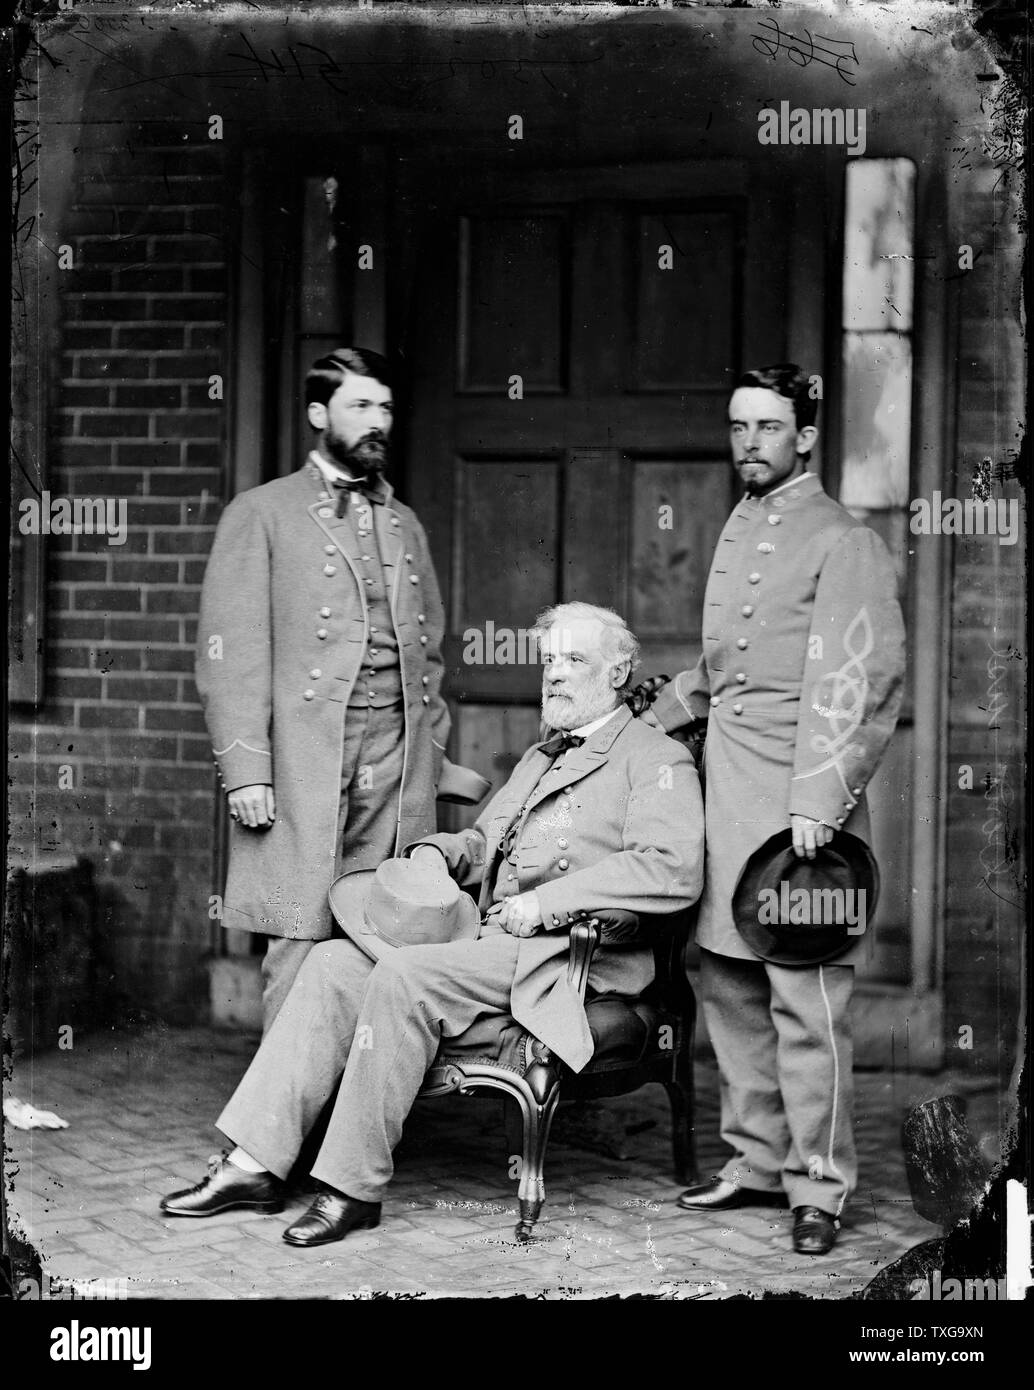 Le général Robert E Lee, centre, entre son fils George Washington Lee, à gauche, et le Colonel Walter Taylor, son aide de camp lors de la guerre de Sécession (1861-1865), peu après la signature de la capitulation des confédérés. Banque D'Images